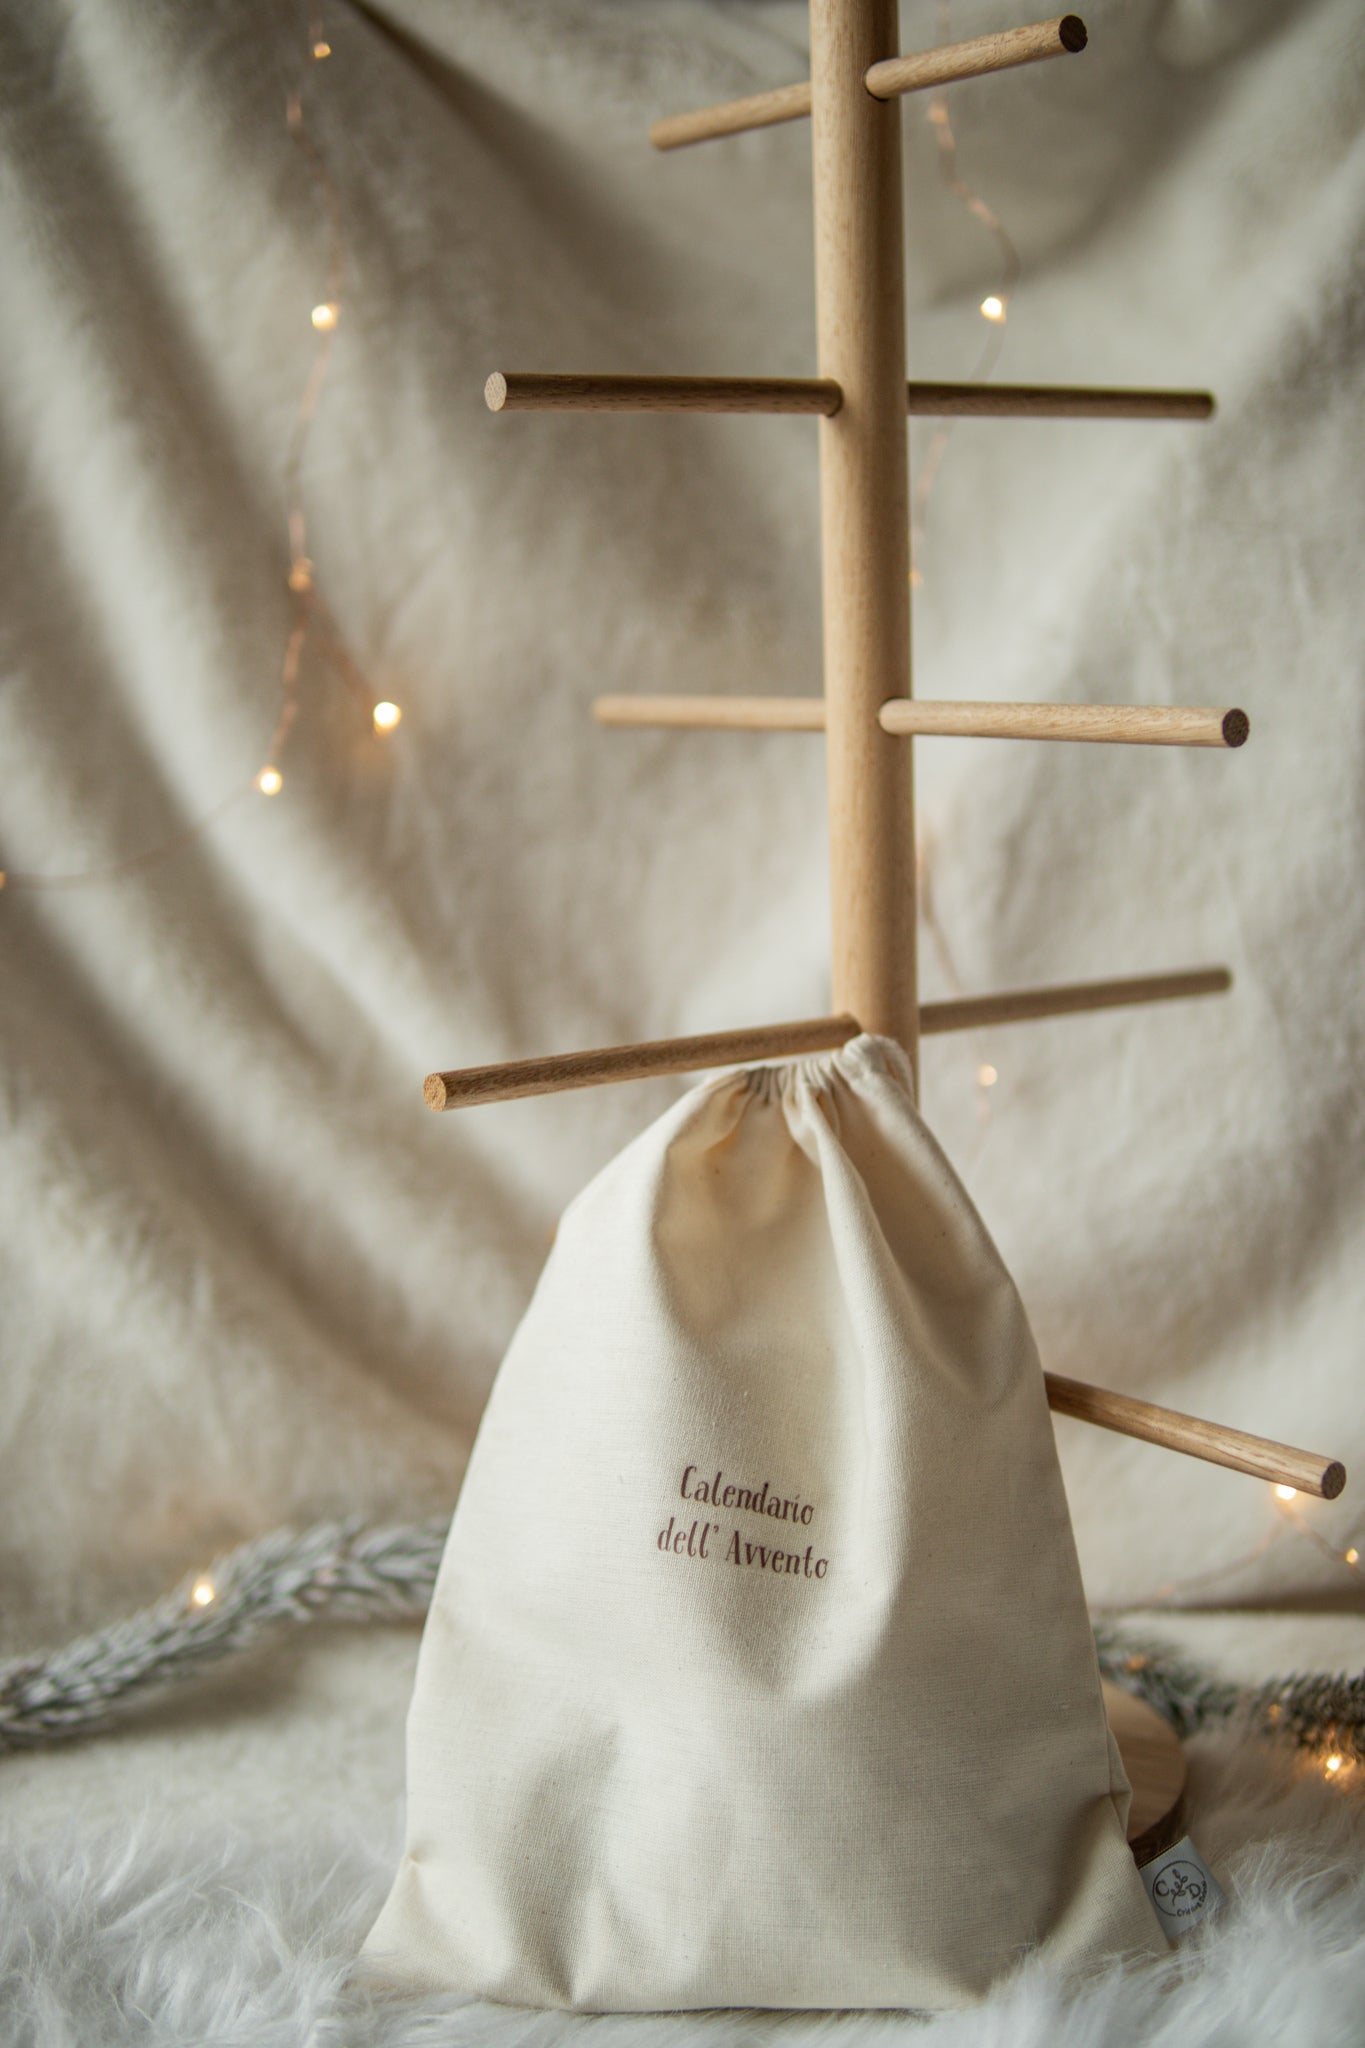 Calendario dell’Avvento stile nordico fatto a mano componibile composto da Albero in legno e set di sacchetti con tag numeri